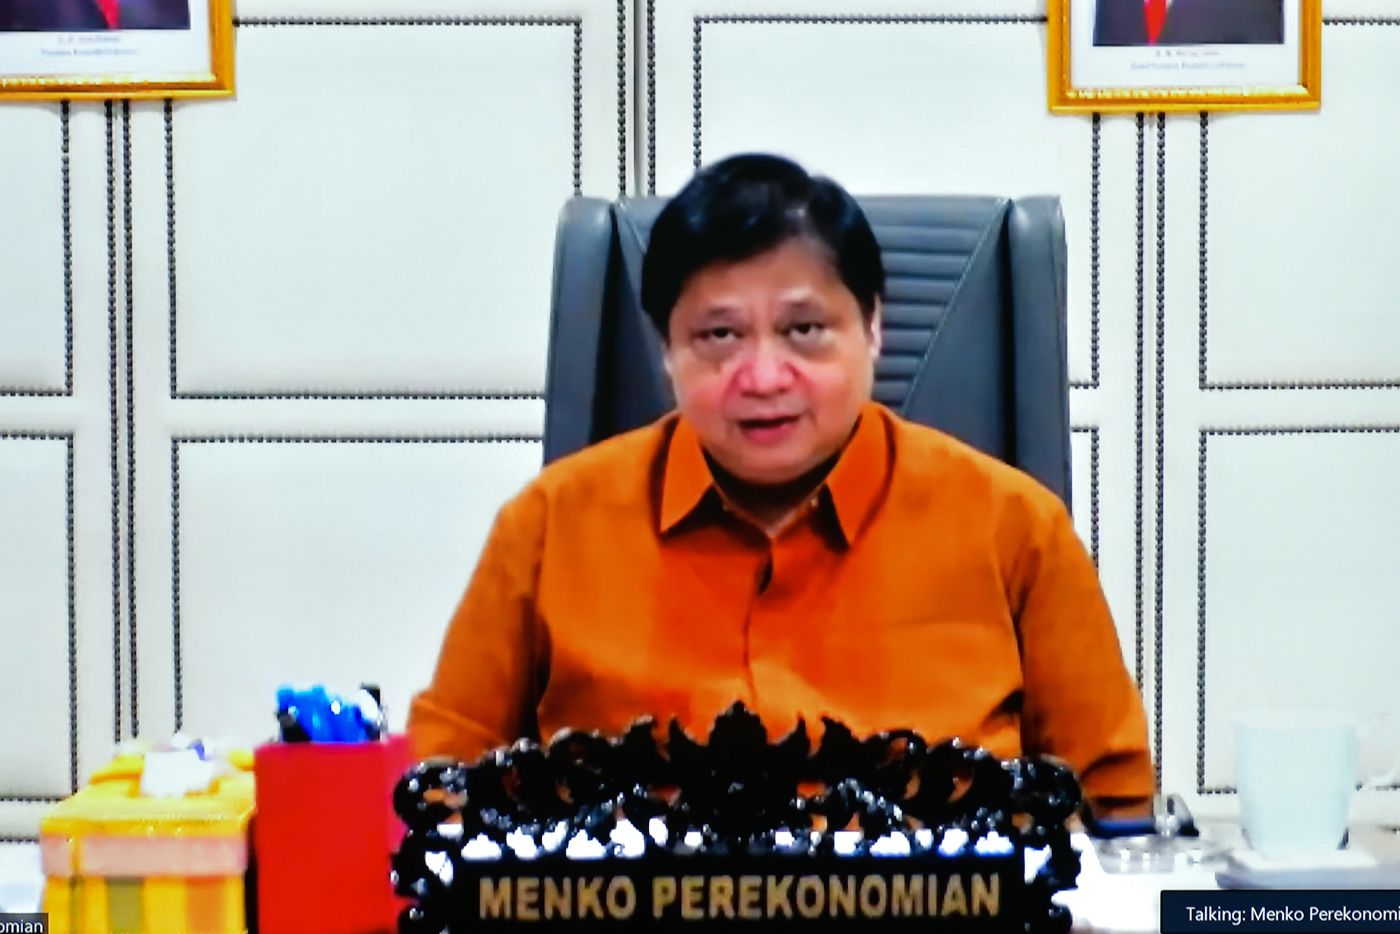 Cegah Klaster Pilkada, Presiden Perintahkan Kapolri Jaga Protokol Kesehatan di Pilkada 2020.